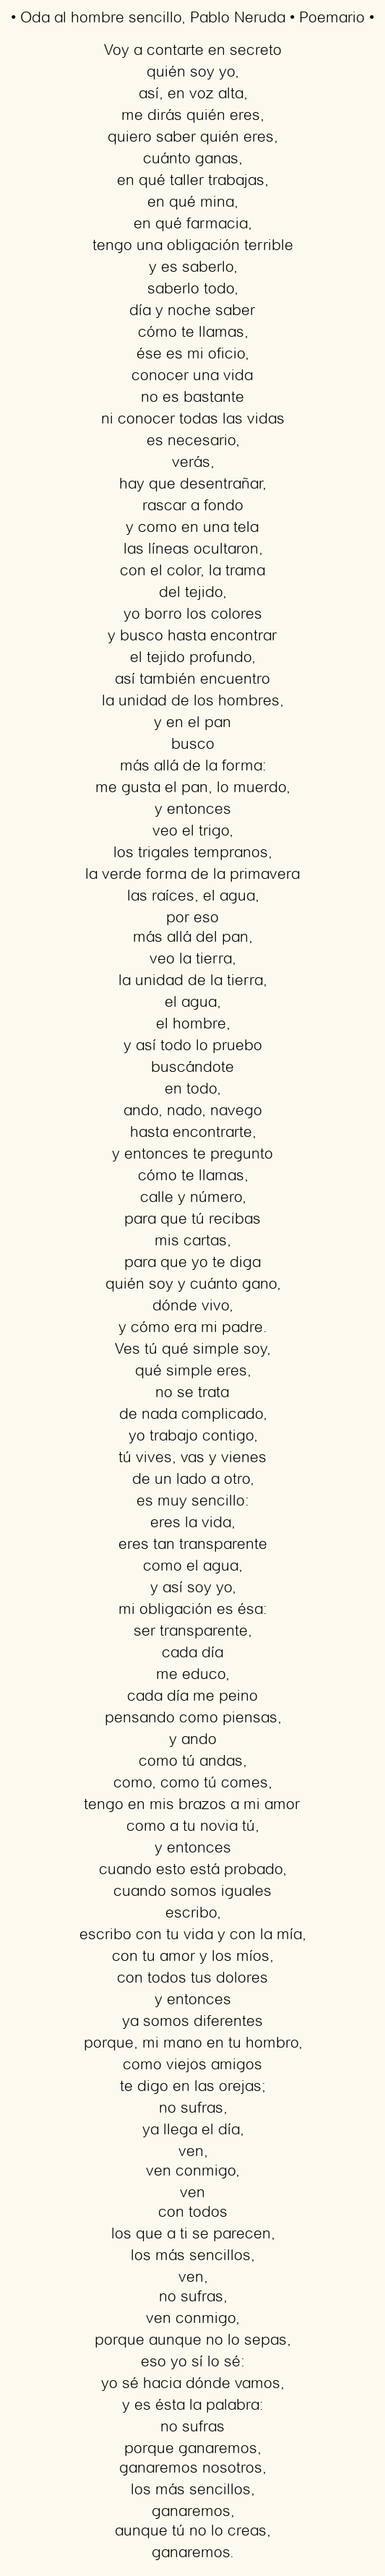 Imagen con el poema Oda al hombre sencillo, por Pablo Neruda